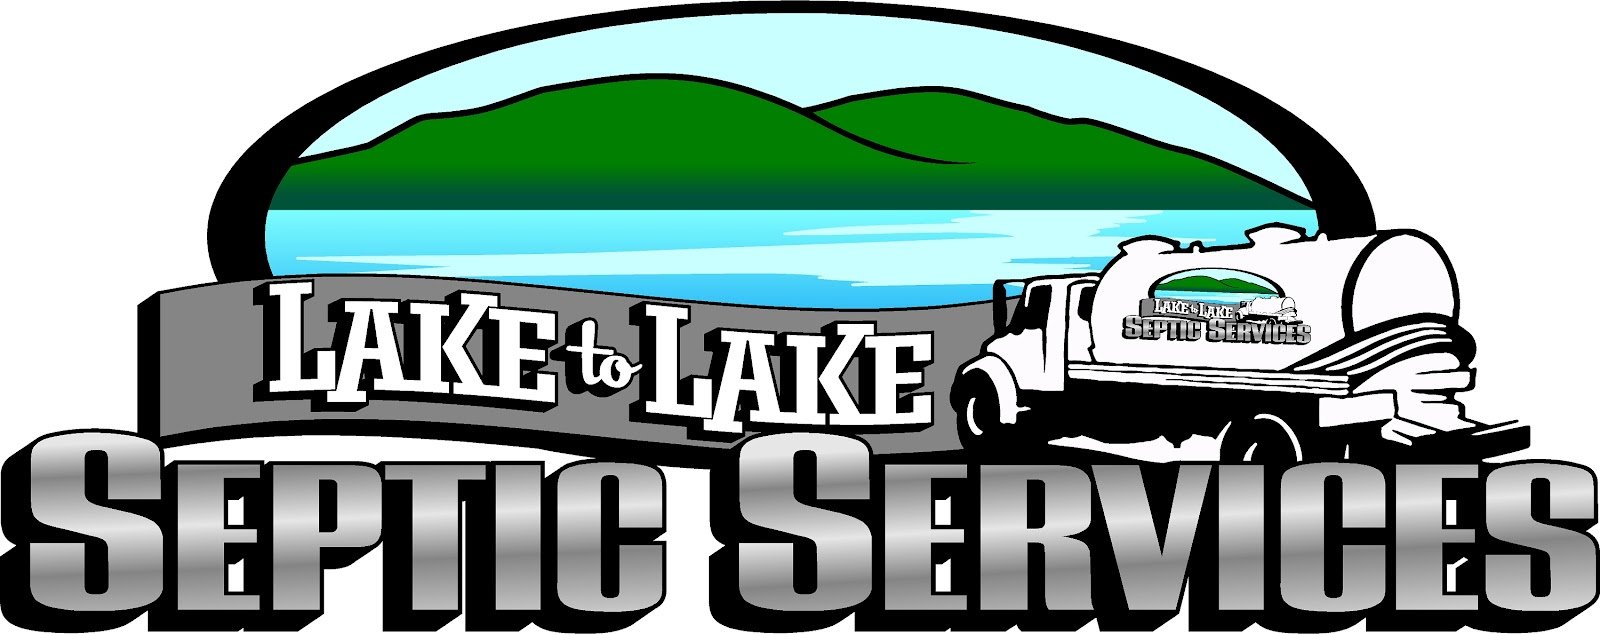 Lake to Lake Septic Logo.jpg